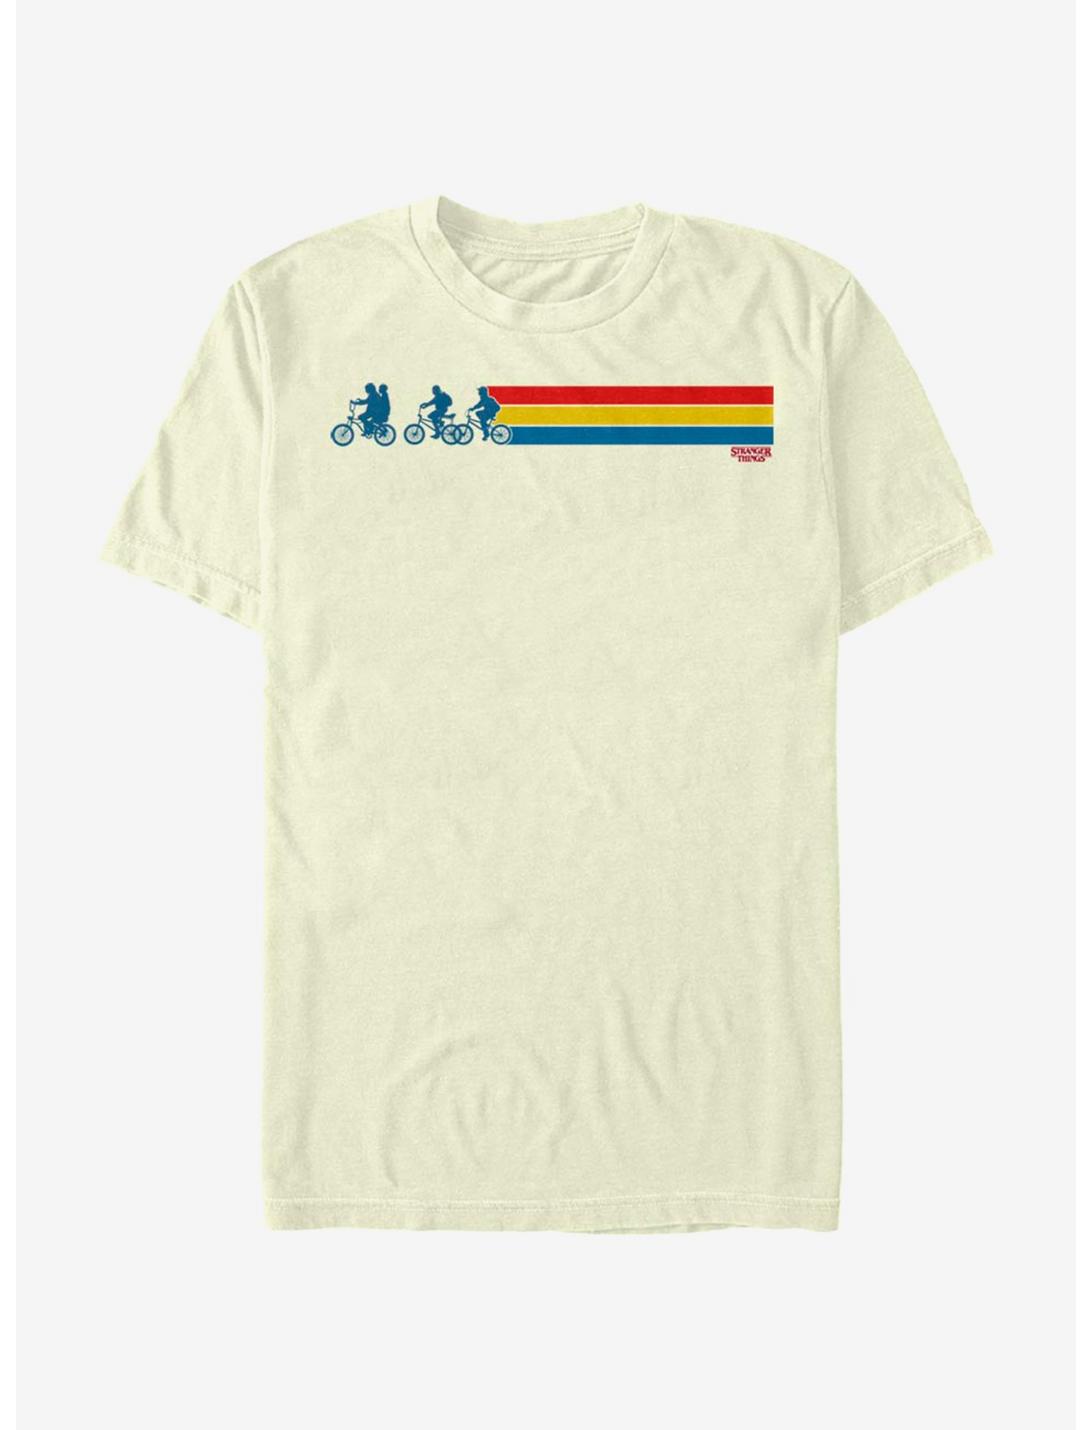 Stranger Things Bikes and Stripes T-Shirt, NATURAL, hi-res